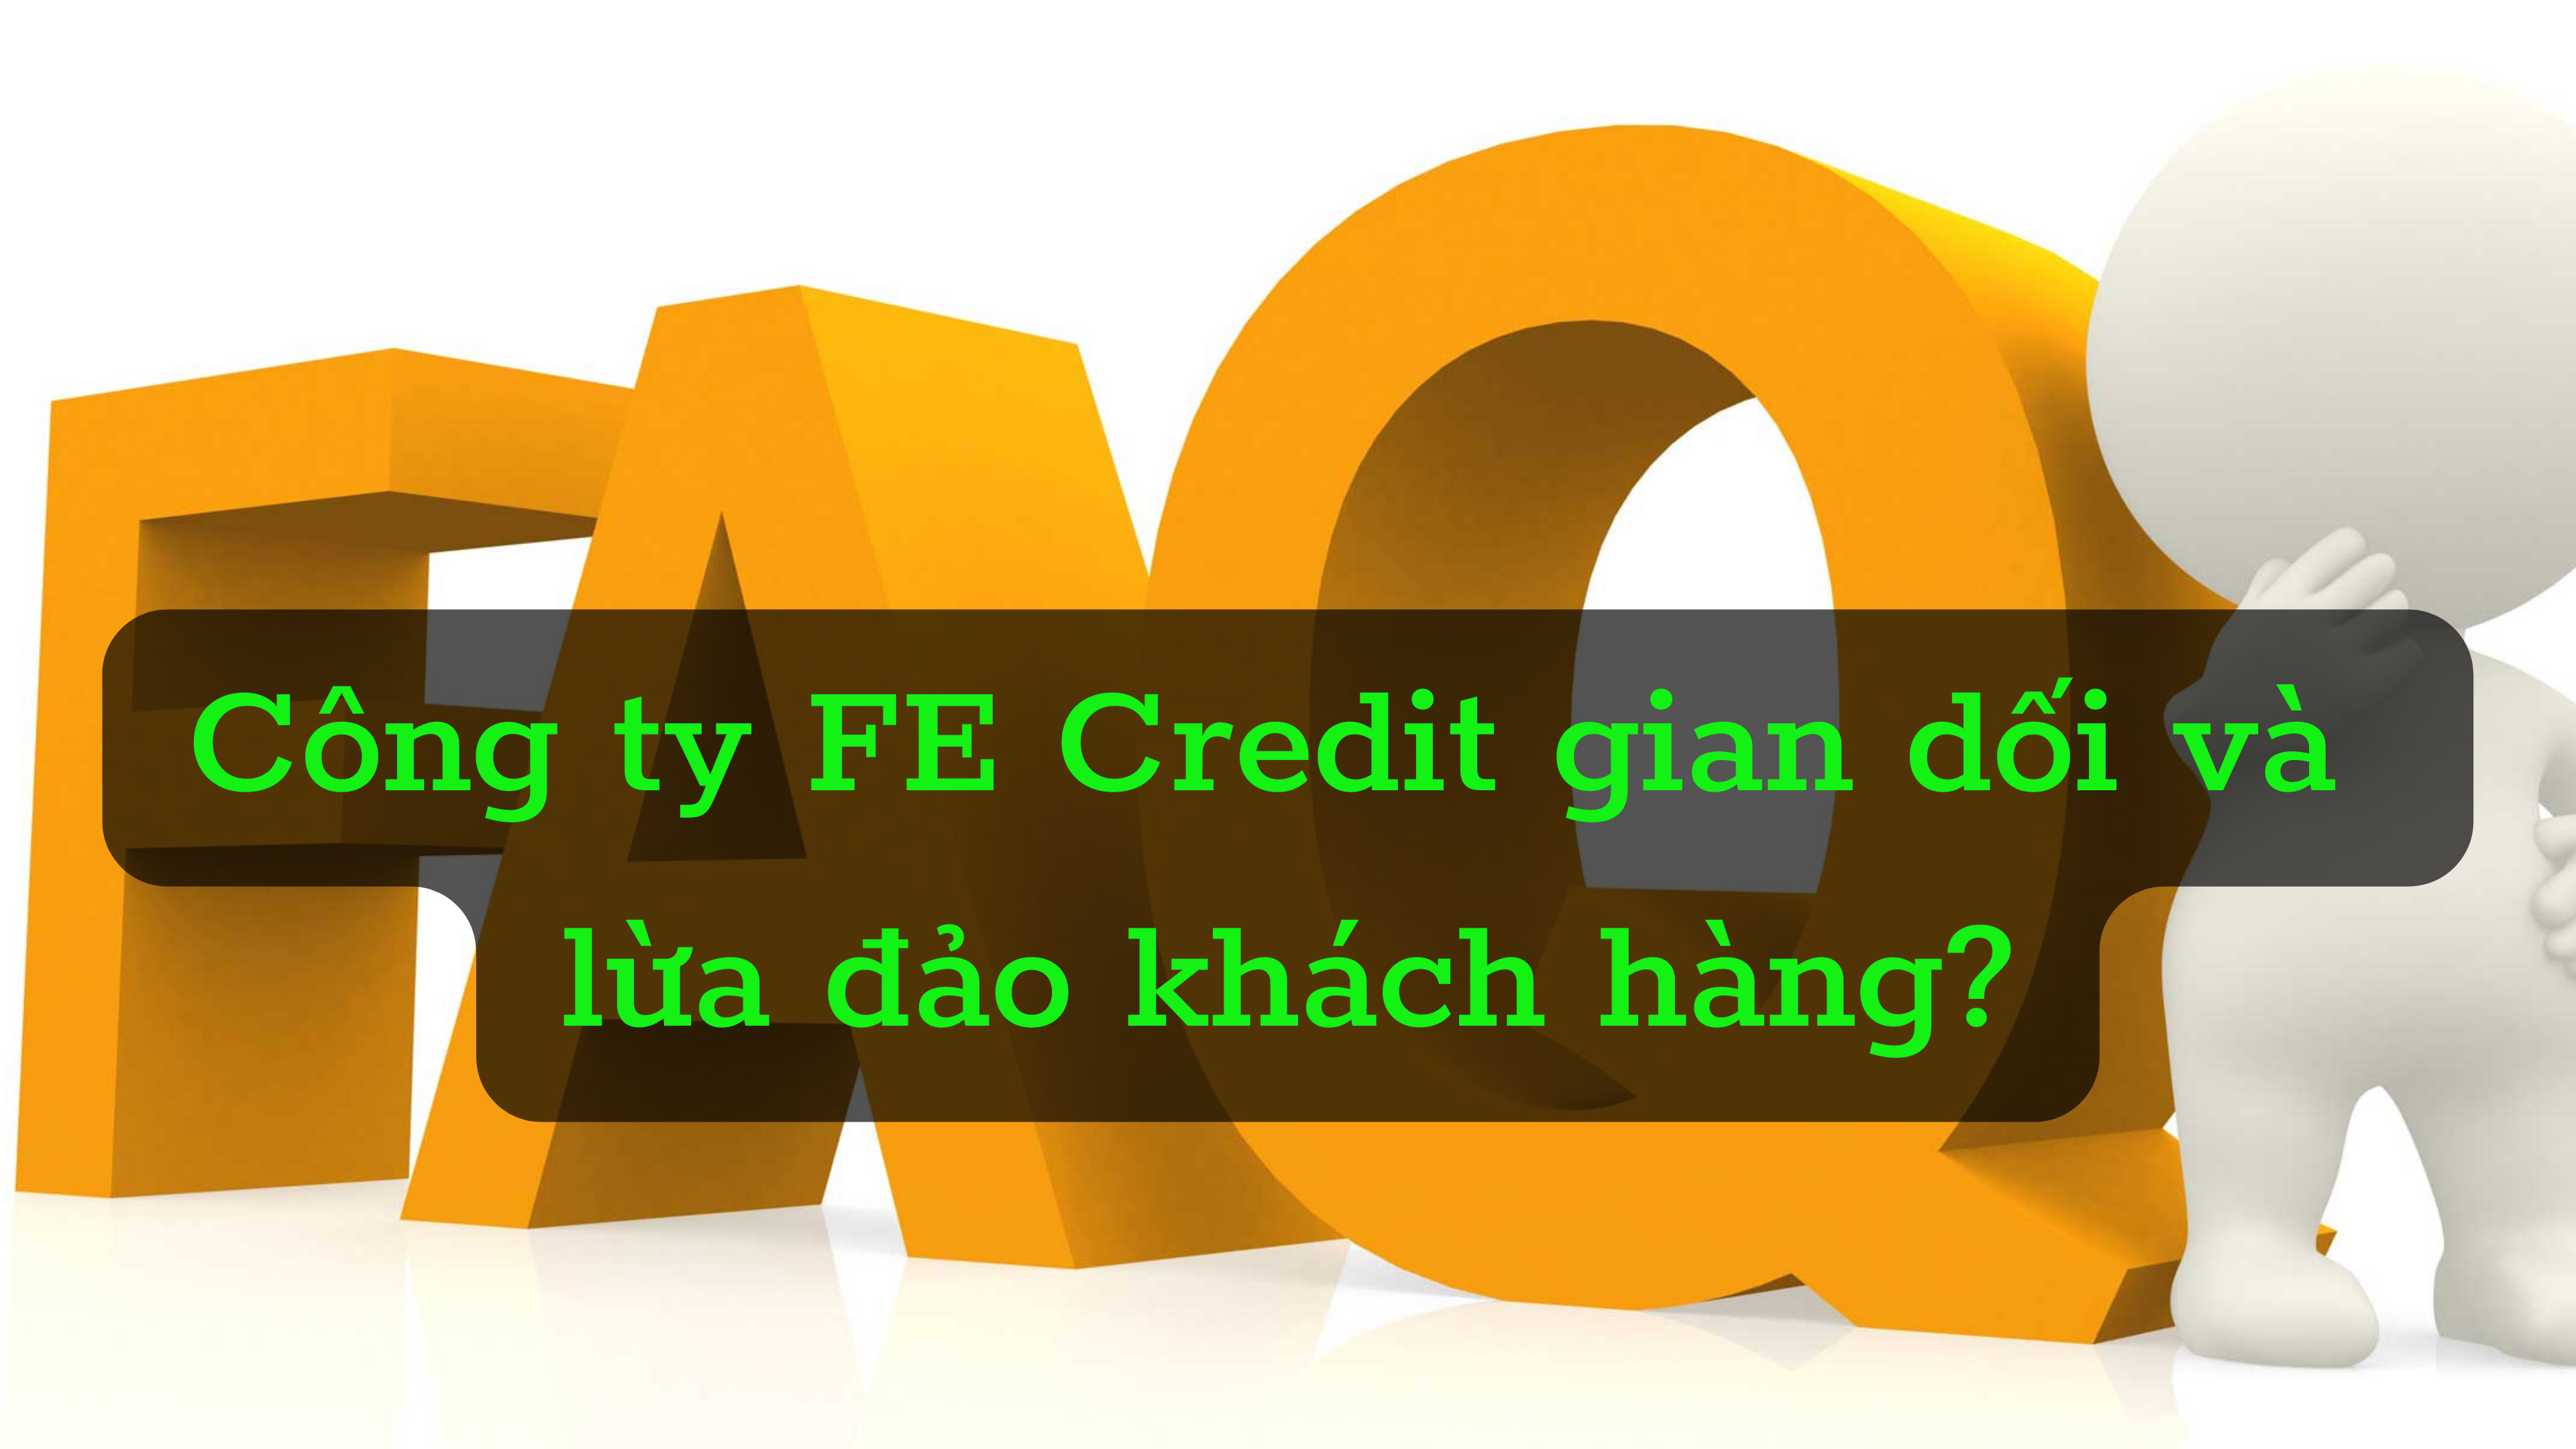 hỏi đáp công ty tài chính FE Credit gian dối và gài bẫy khách hàng 